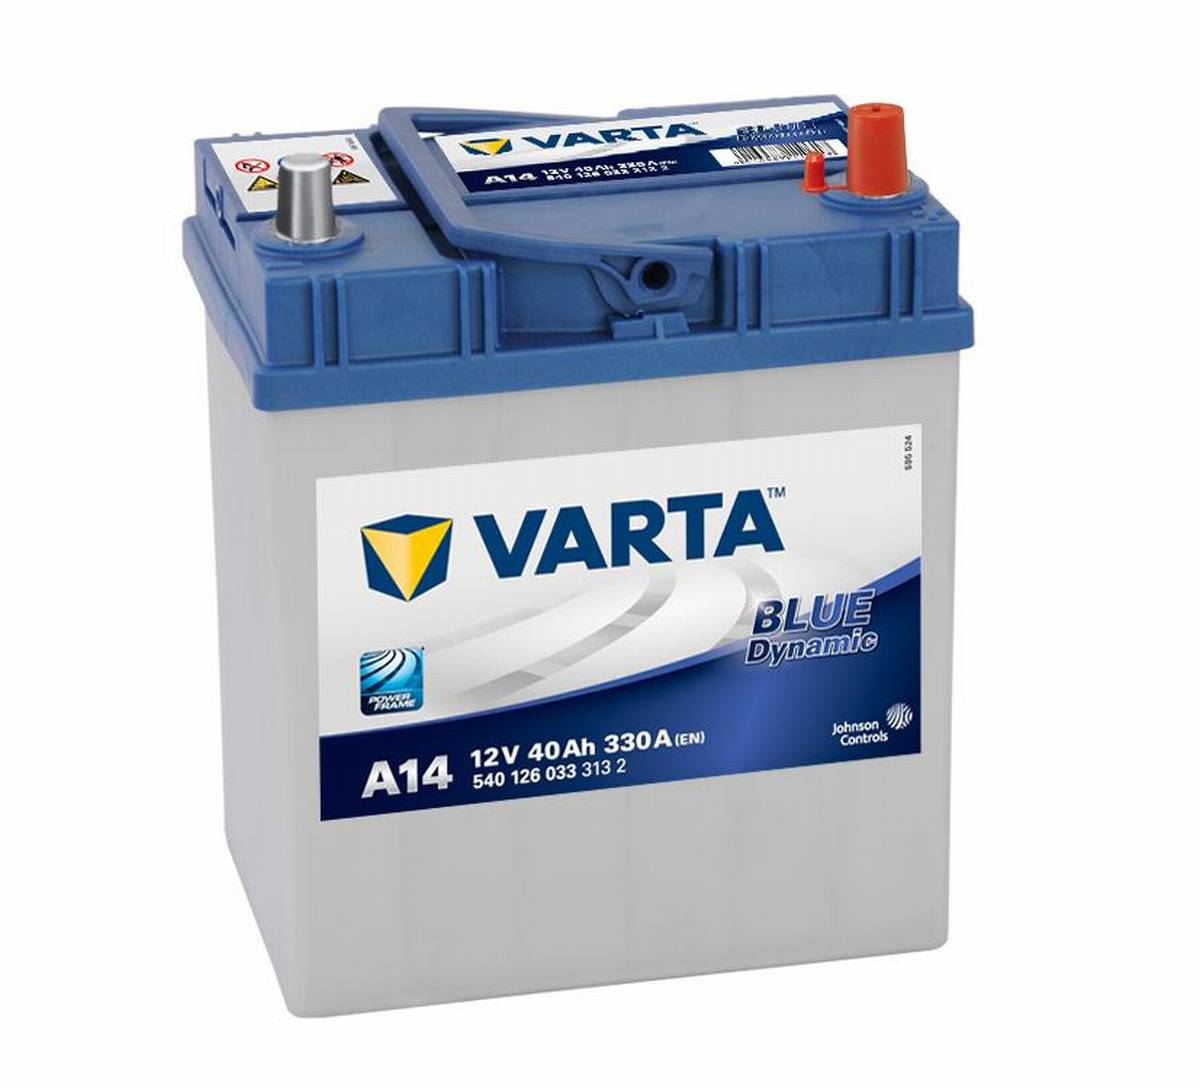 VARTA A14 Blue Dynamic 12V 40Ah 330A Autobatterie 540 126 033